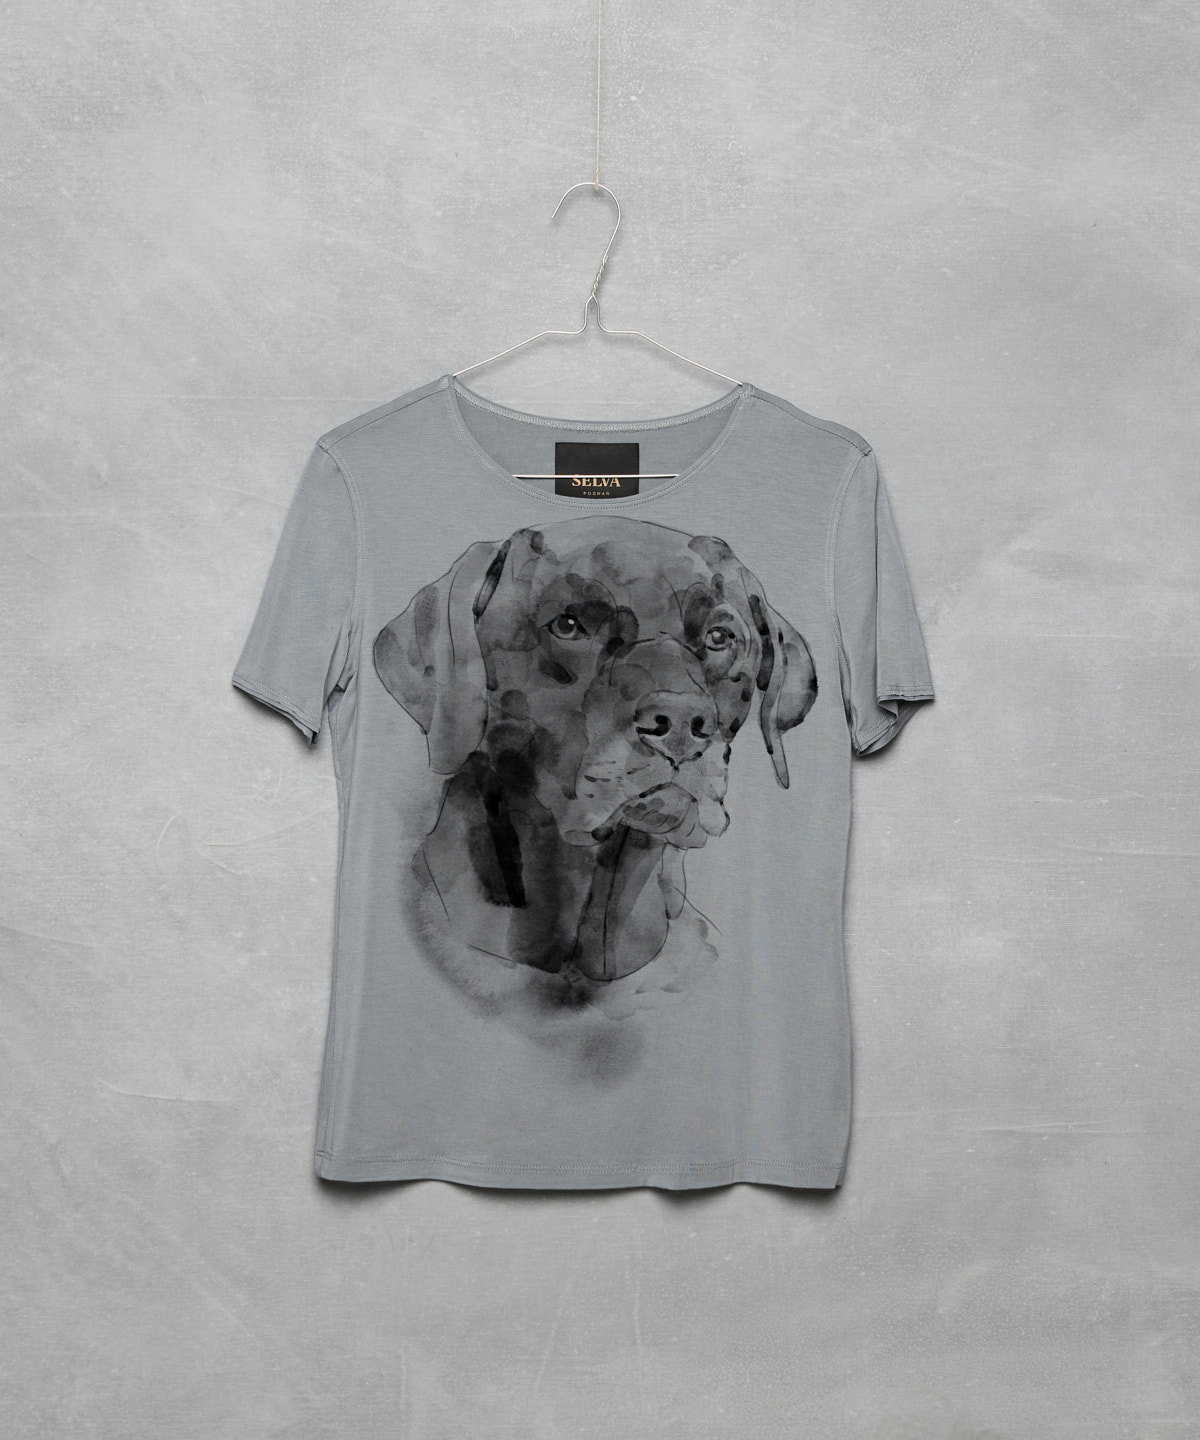 Labrador retriever storm cloud t-shirt woman